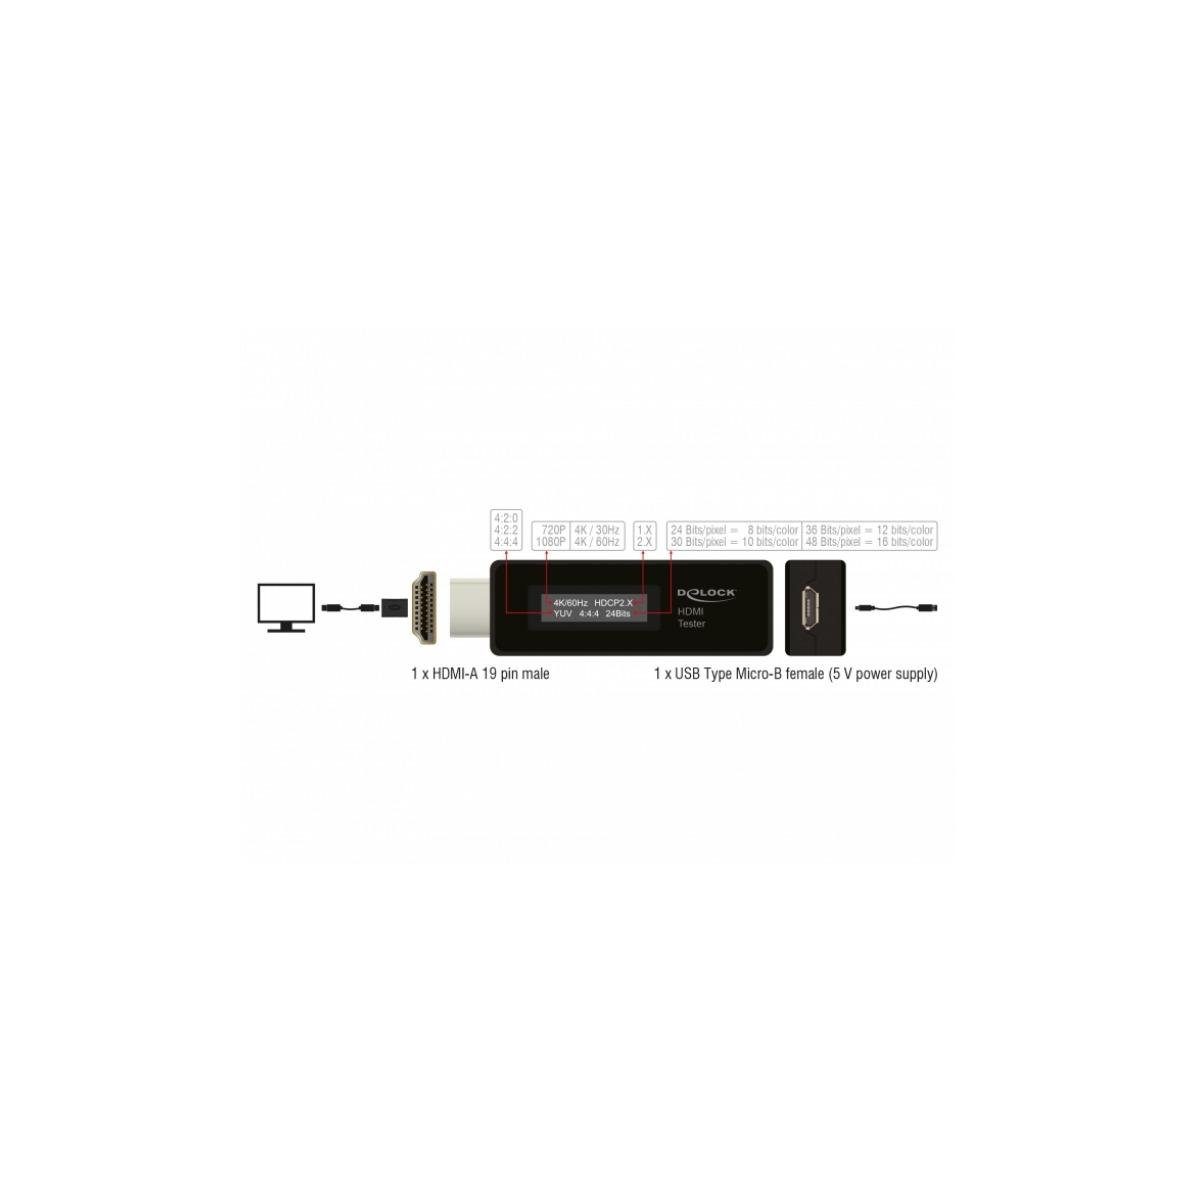 Delock 63327 - HDMI-Tester - EDID-Information HDMI-A, mit Computer-Kabel, HDMI OLED-Anzeige Für